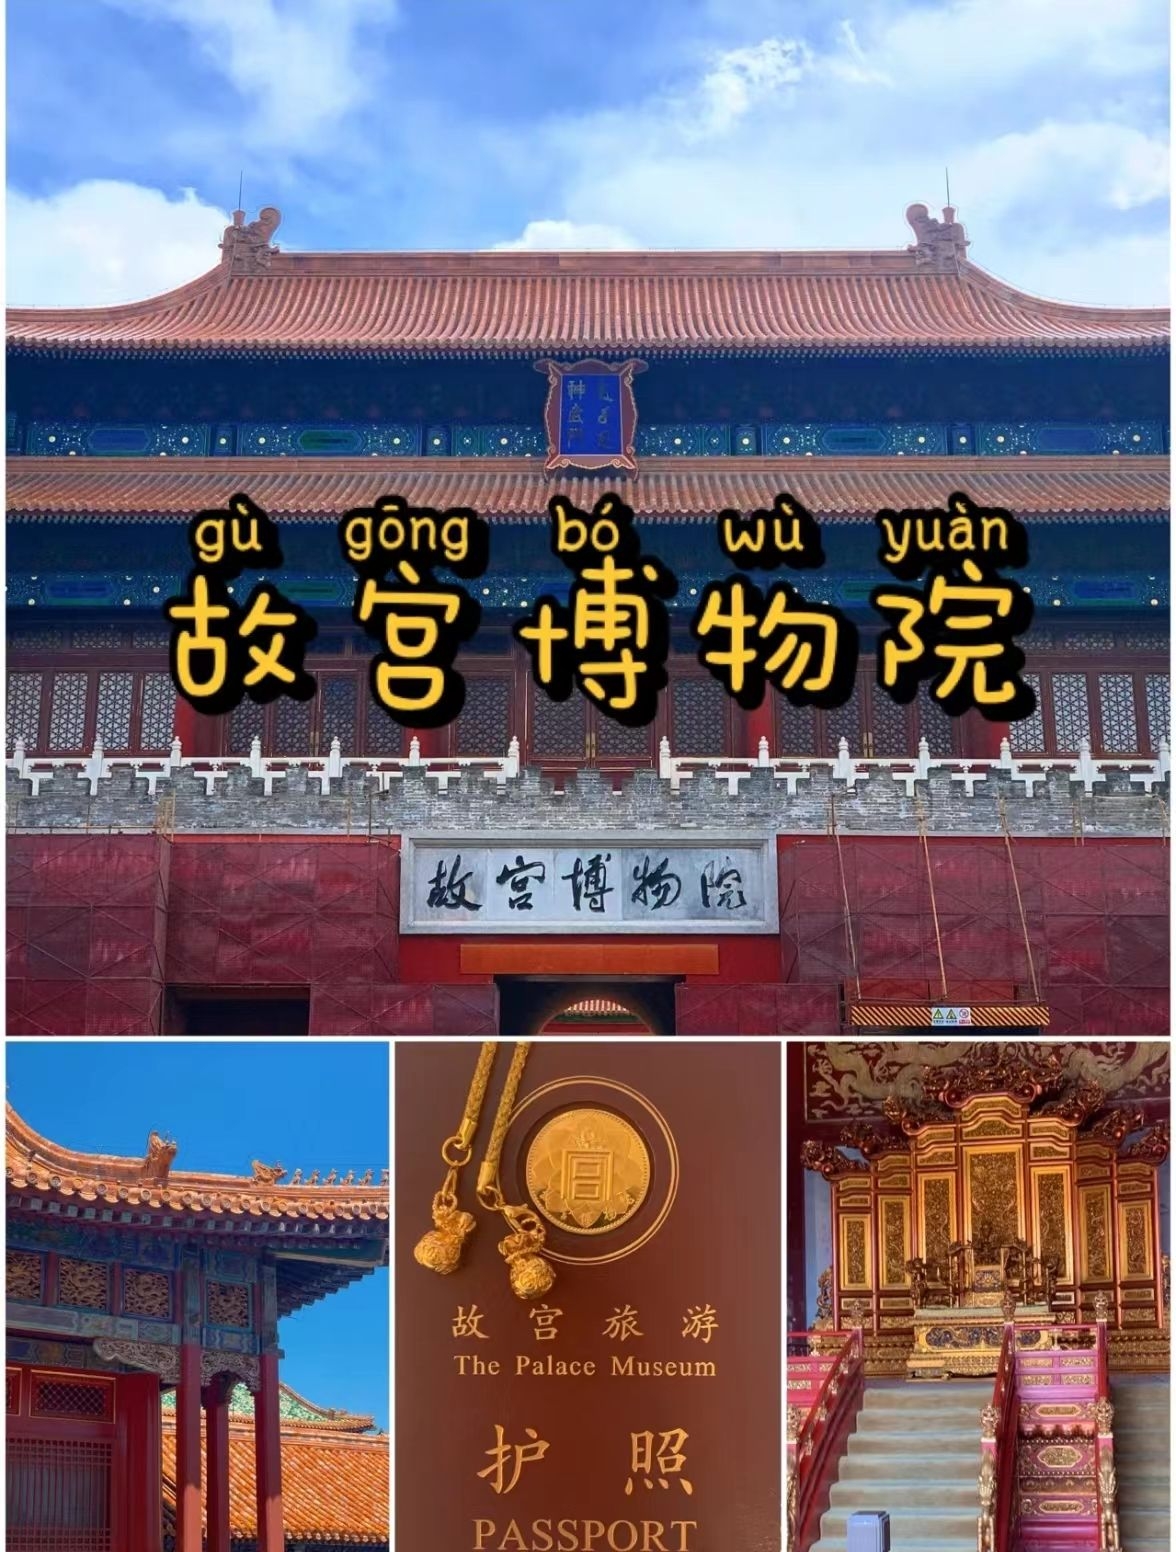 北京-故宫一日游攻略拍照&购物建议指南